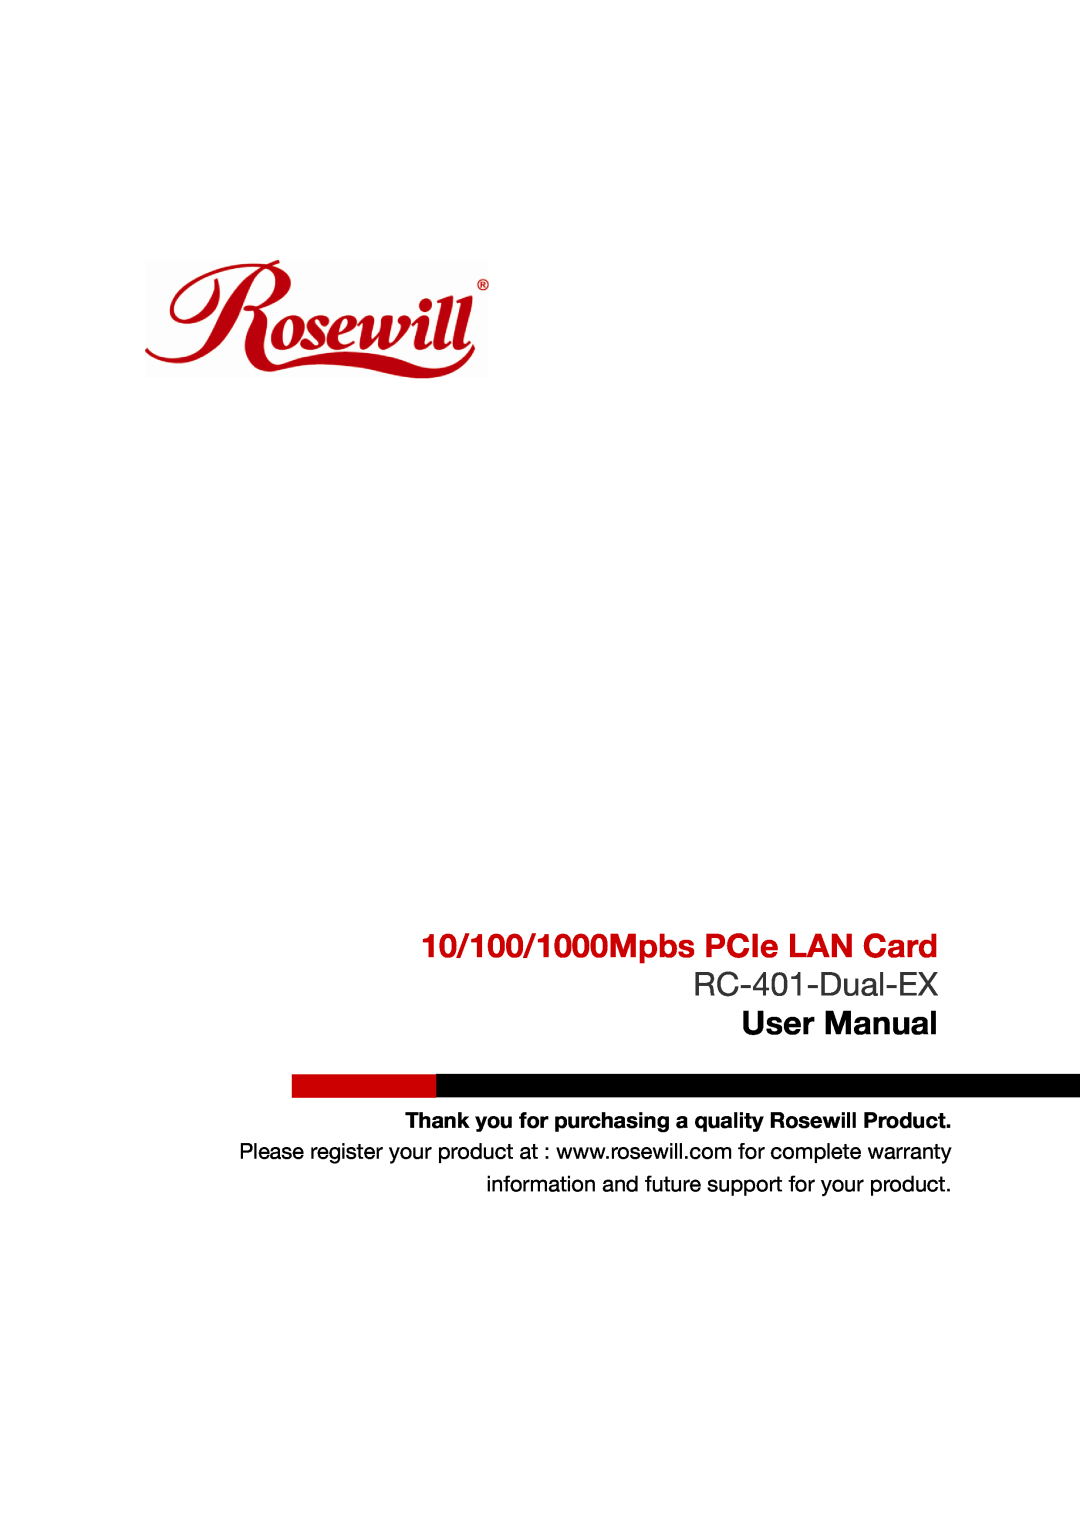 Rosewill RC-401-Dual-EX user manual 10/100/1000Mpbs PCIe LAN Card, User Manual 